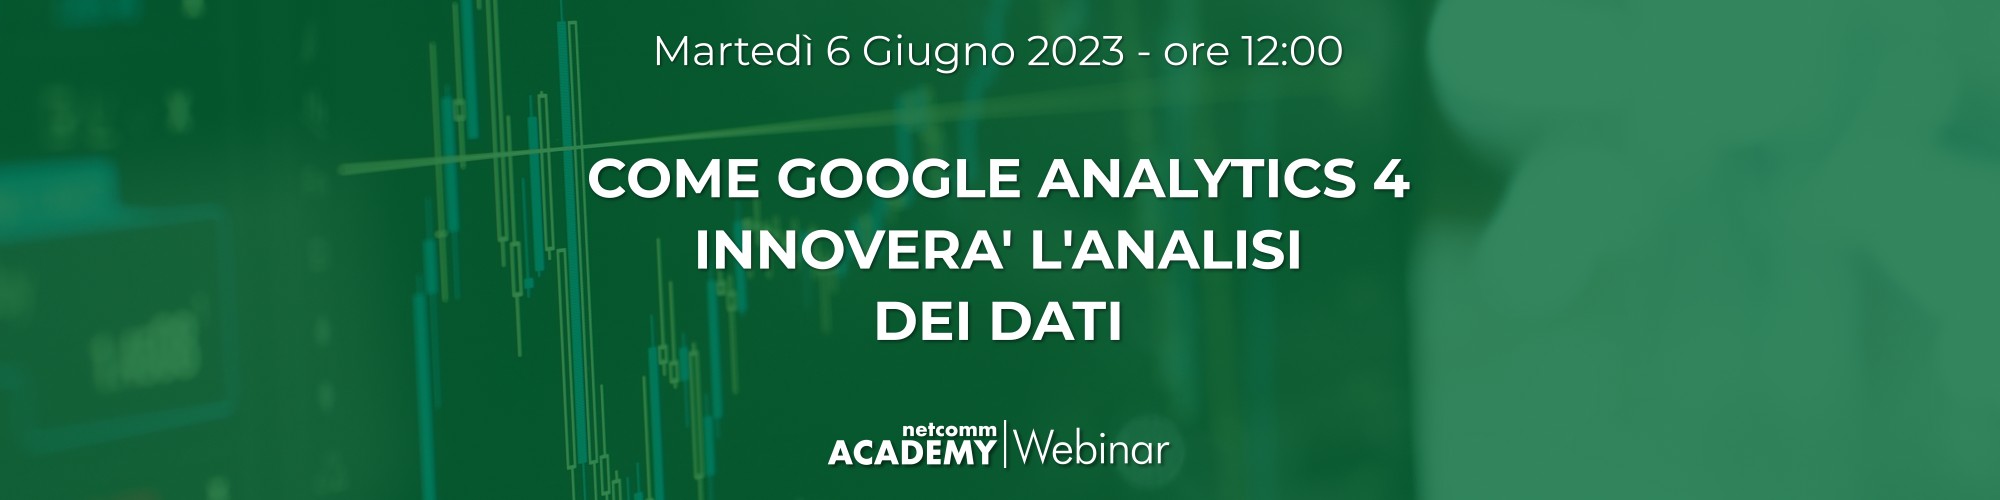 come-google-analytics-4-innovera-analisi-dati_webinar-netcomm-academy